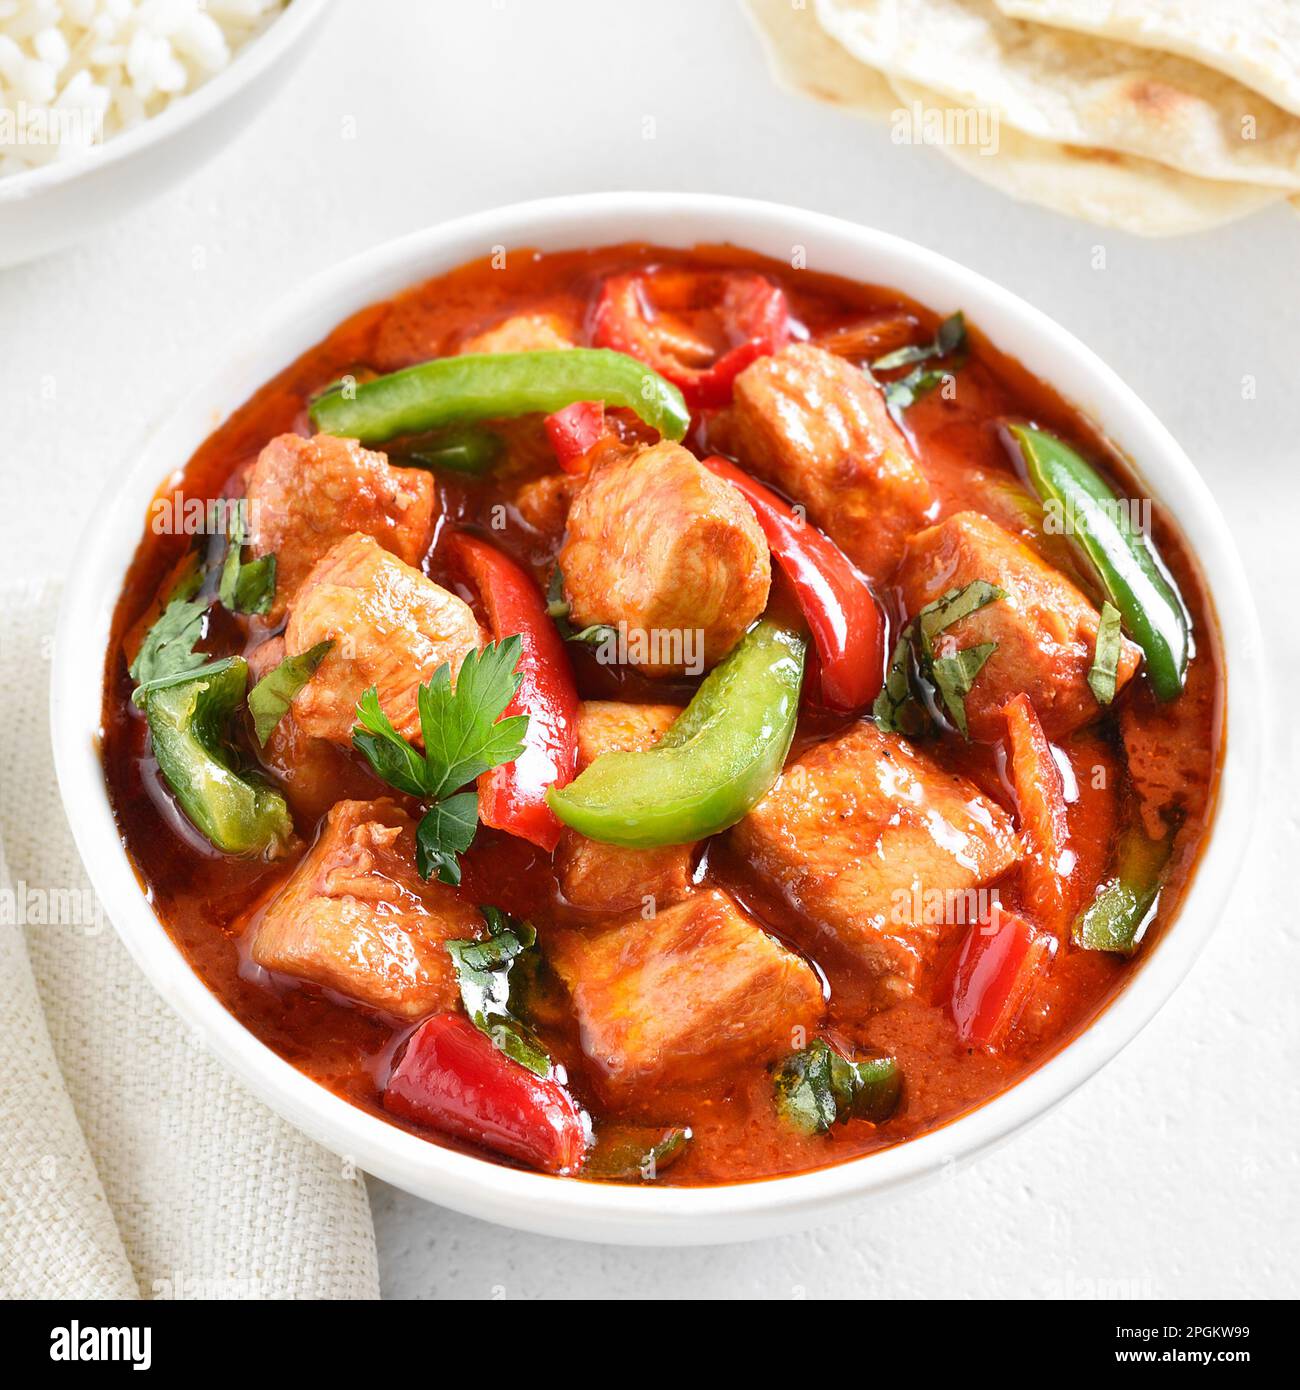 Curry de pollo rojo estilo tailandés con verduras en tazón sobre fondo claro. Vista de primer plano Foto de stock